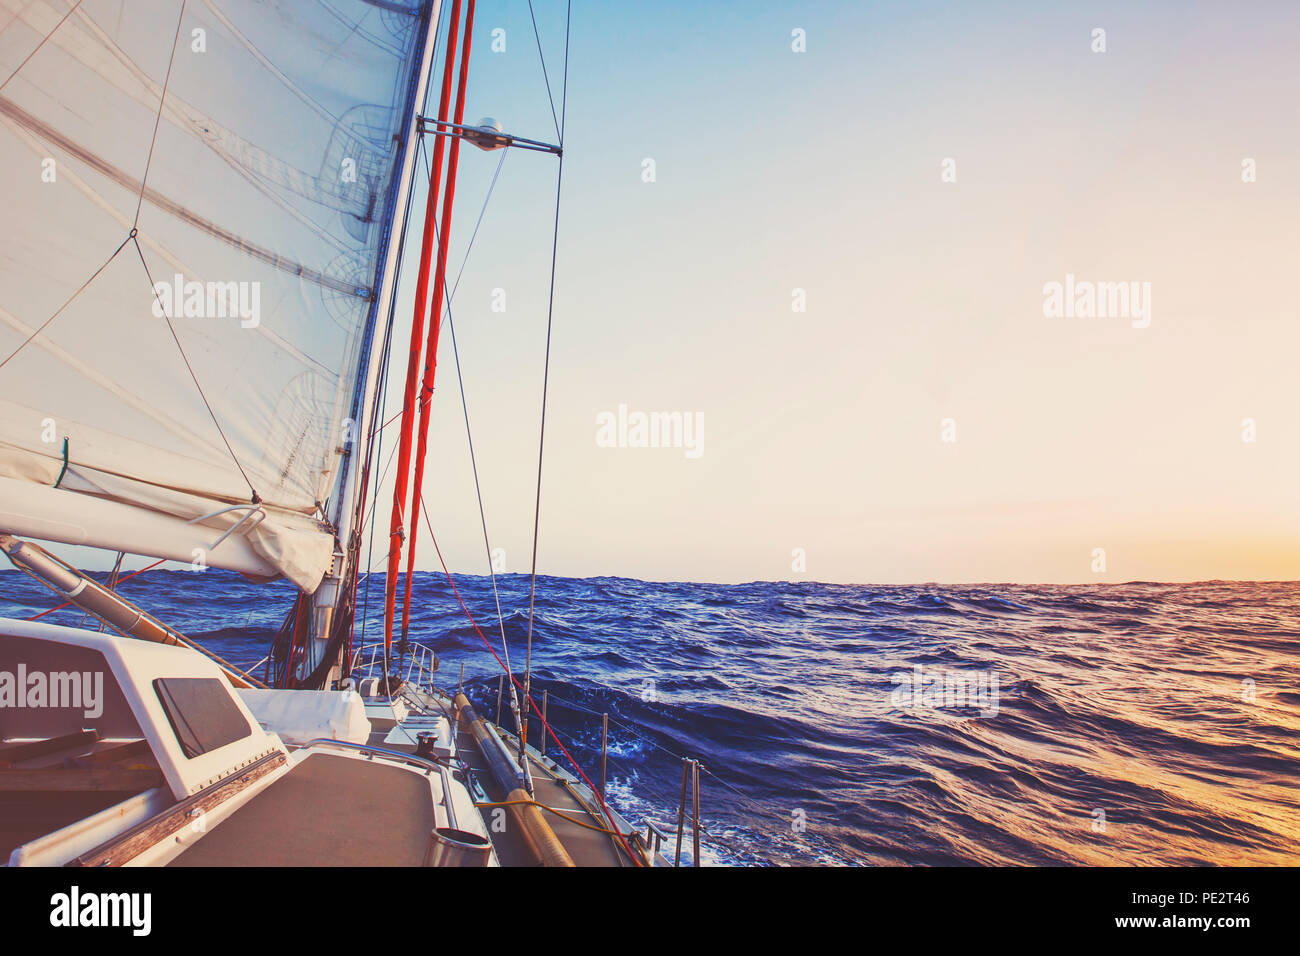 Croisière Romantique à bord du bateau à voile, Yacht de luxe, beau fond marin Banque D'Images